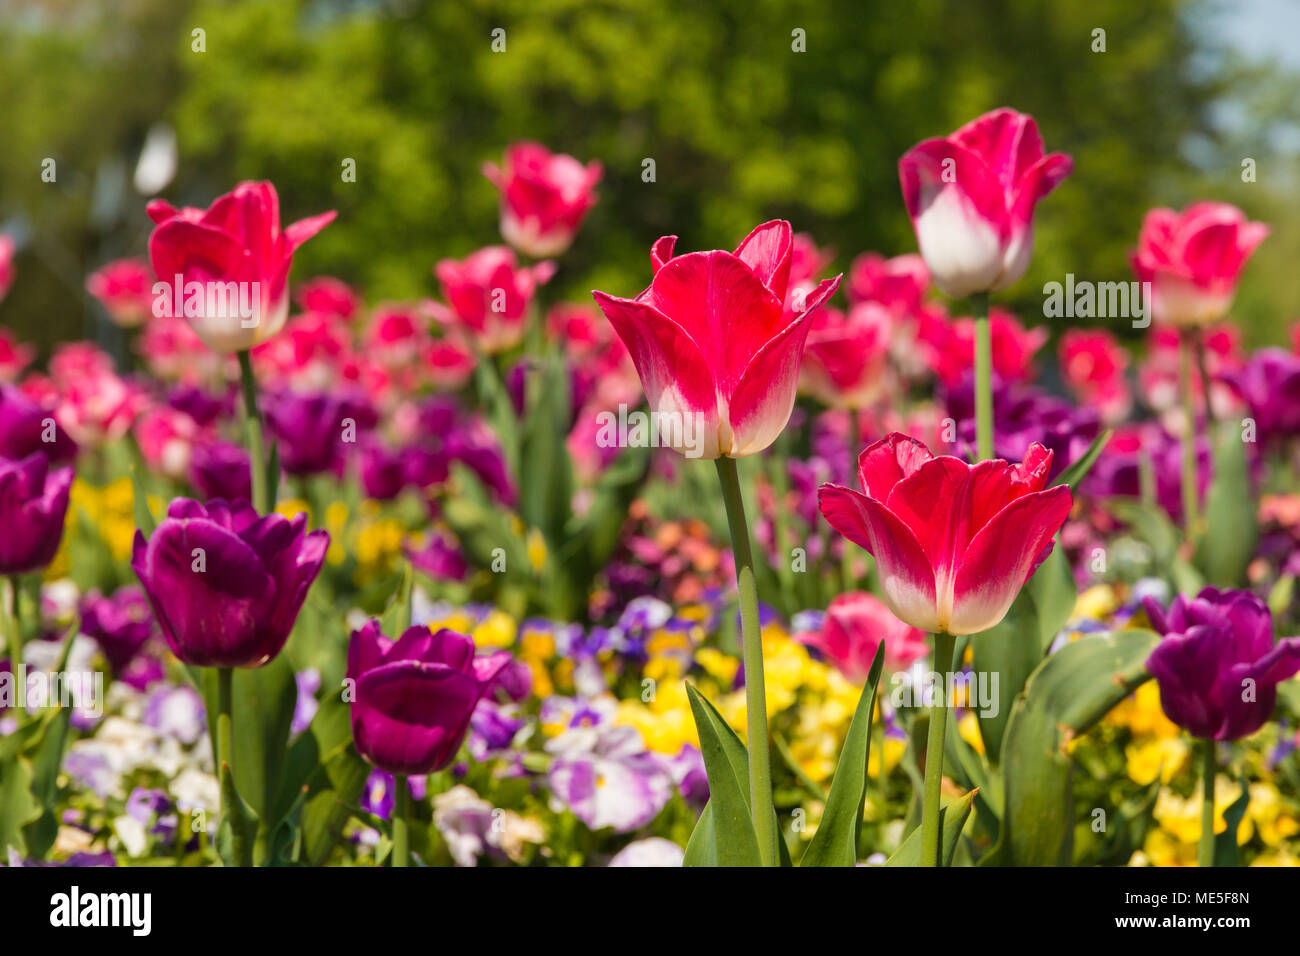 L'accent sur deux tulipes roses et blanches (Tulipa) Negrita. Les deux sont entourés de jaune, blanc, violet et pensées (Viola) et Purple tulips. Banque D'Images